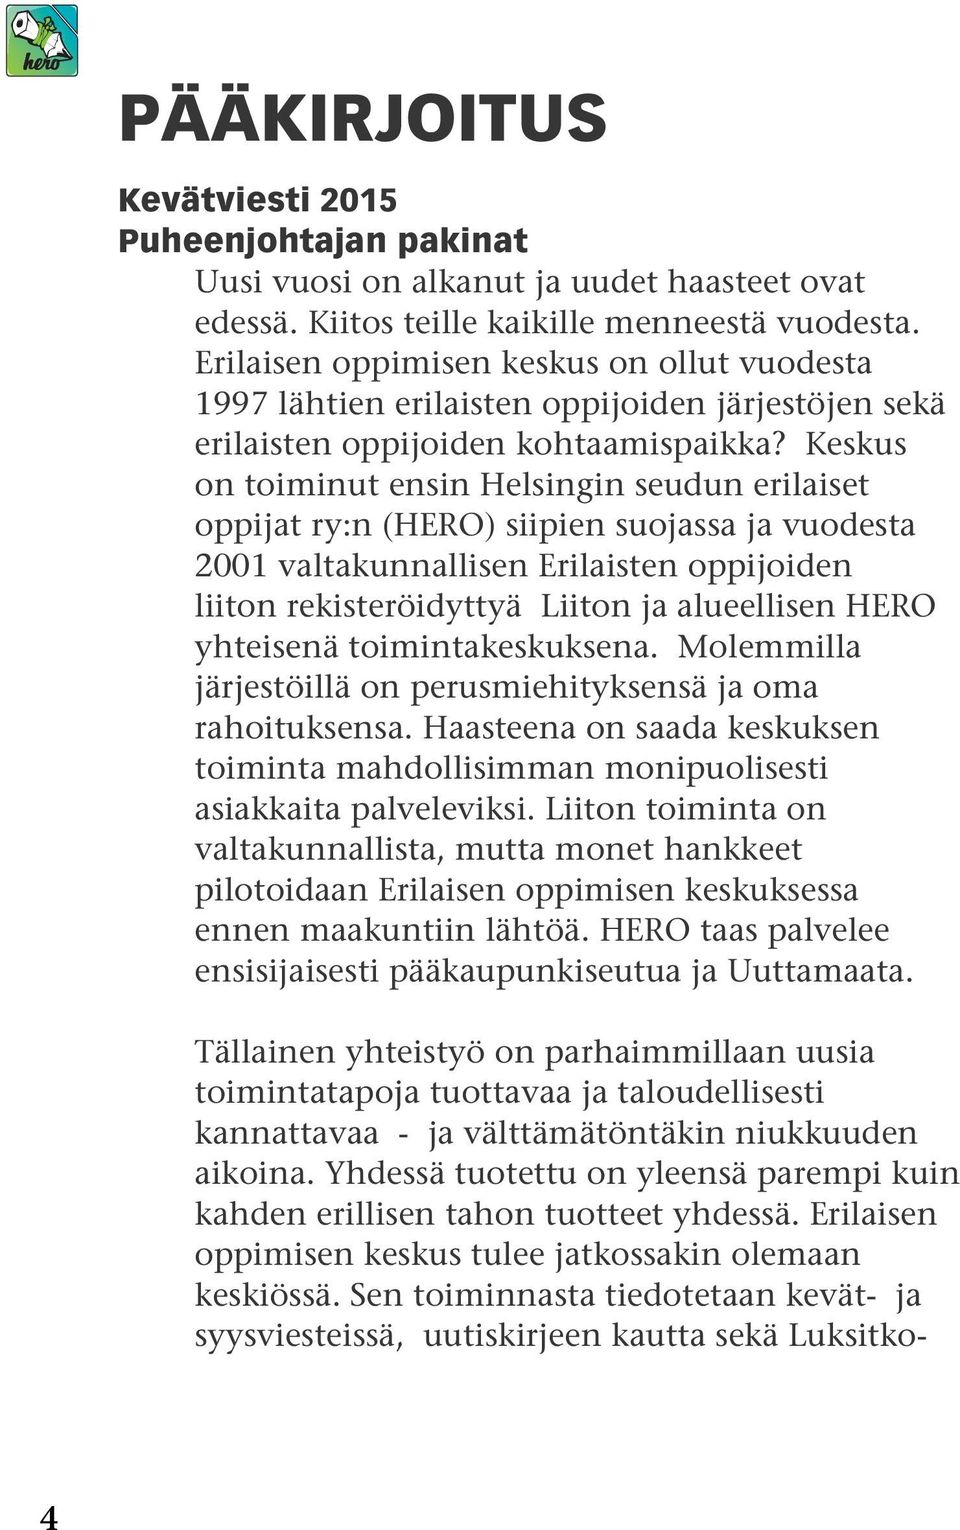 Keskus on toiminut ensin Helsingin seudun erilaiset oppijat ry:n (HERO) siipien suojassa ja vuodesta 2001 valtakunnallisen Erilaisten oppijoiden liiton rekisteröidyttyä Liiton ja alueellisen HERO